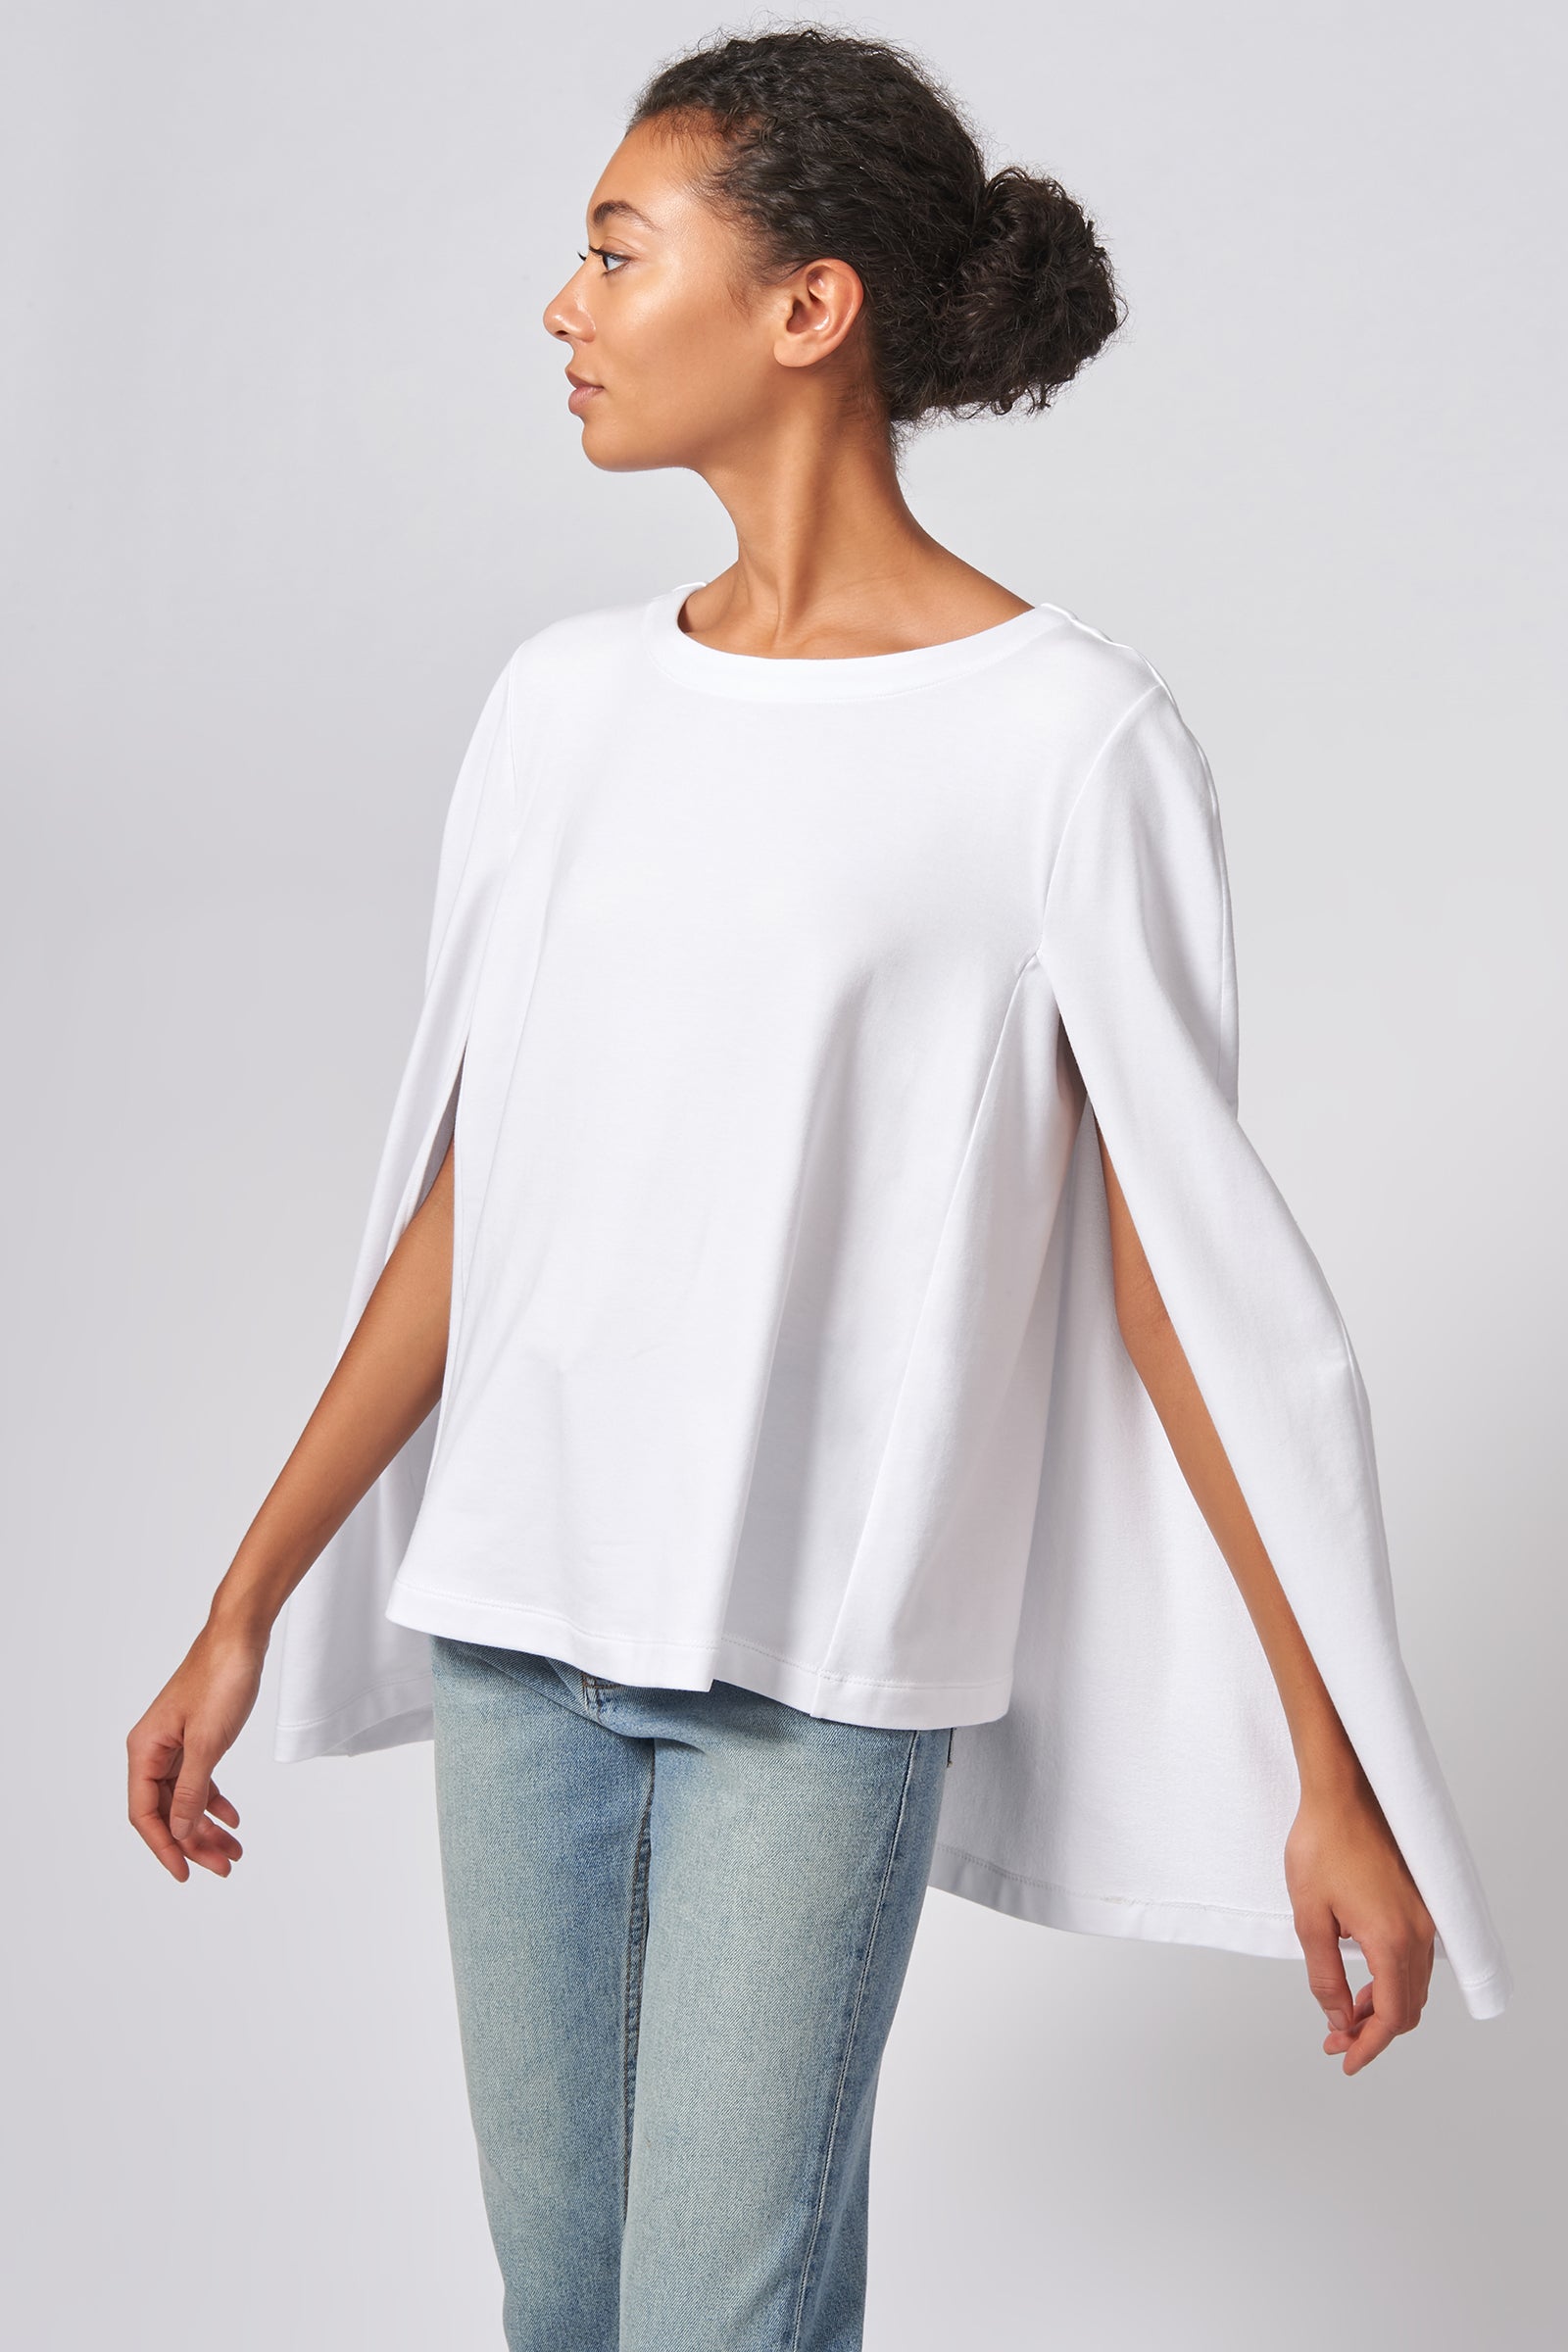 Kal Rieman Cape Sweatshirt in White on Model Front Side View